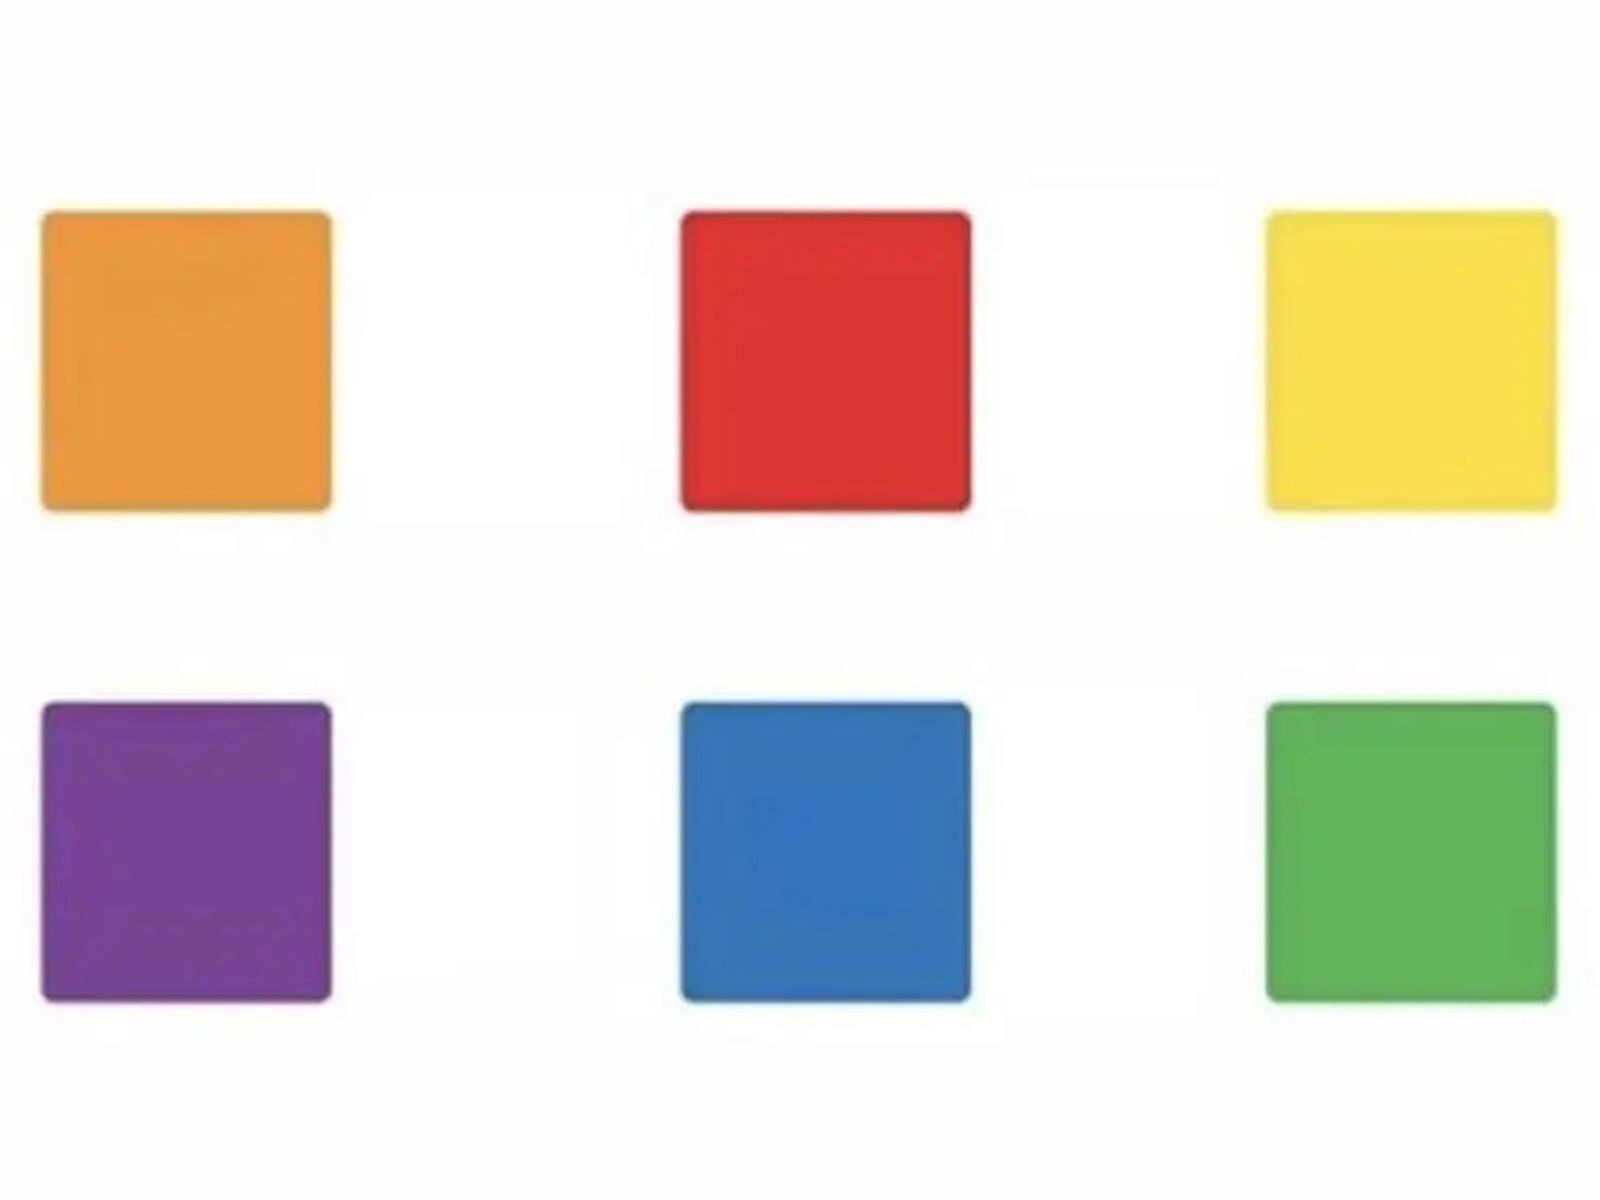 TEST VISUAL | Esta imagen te muestra cuadrados redondeados de distintos colores. (Foto: namastest.net)